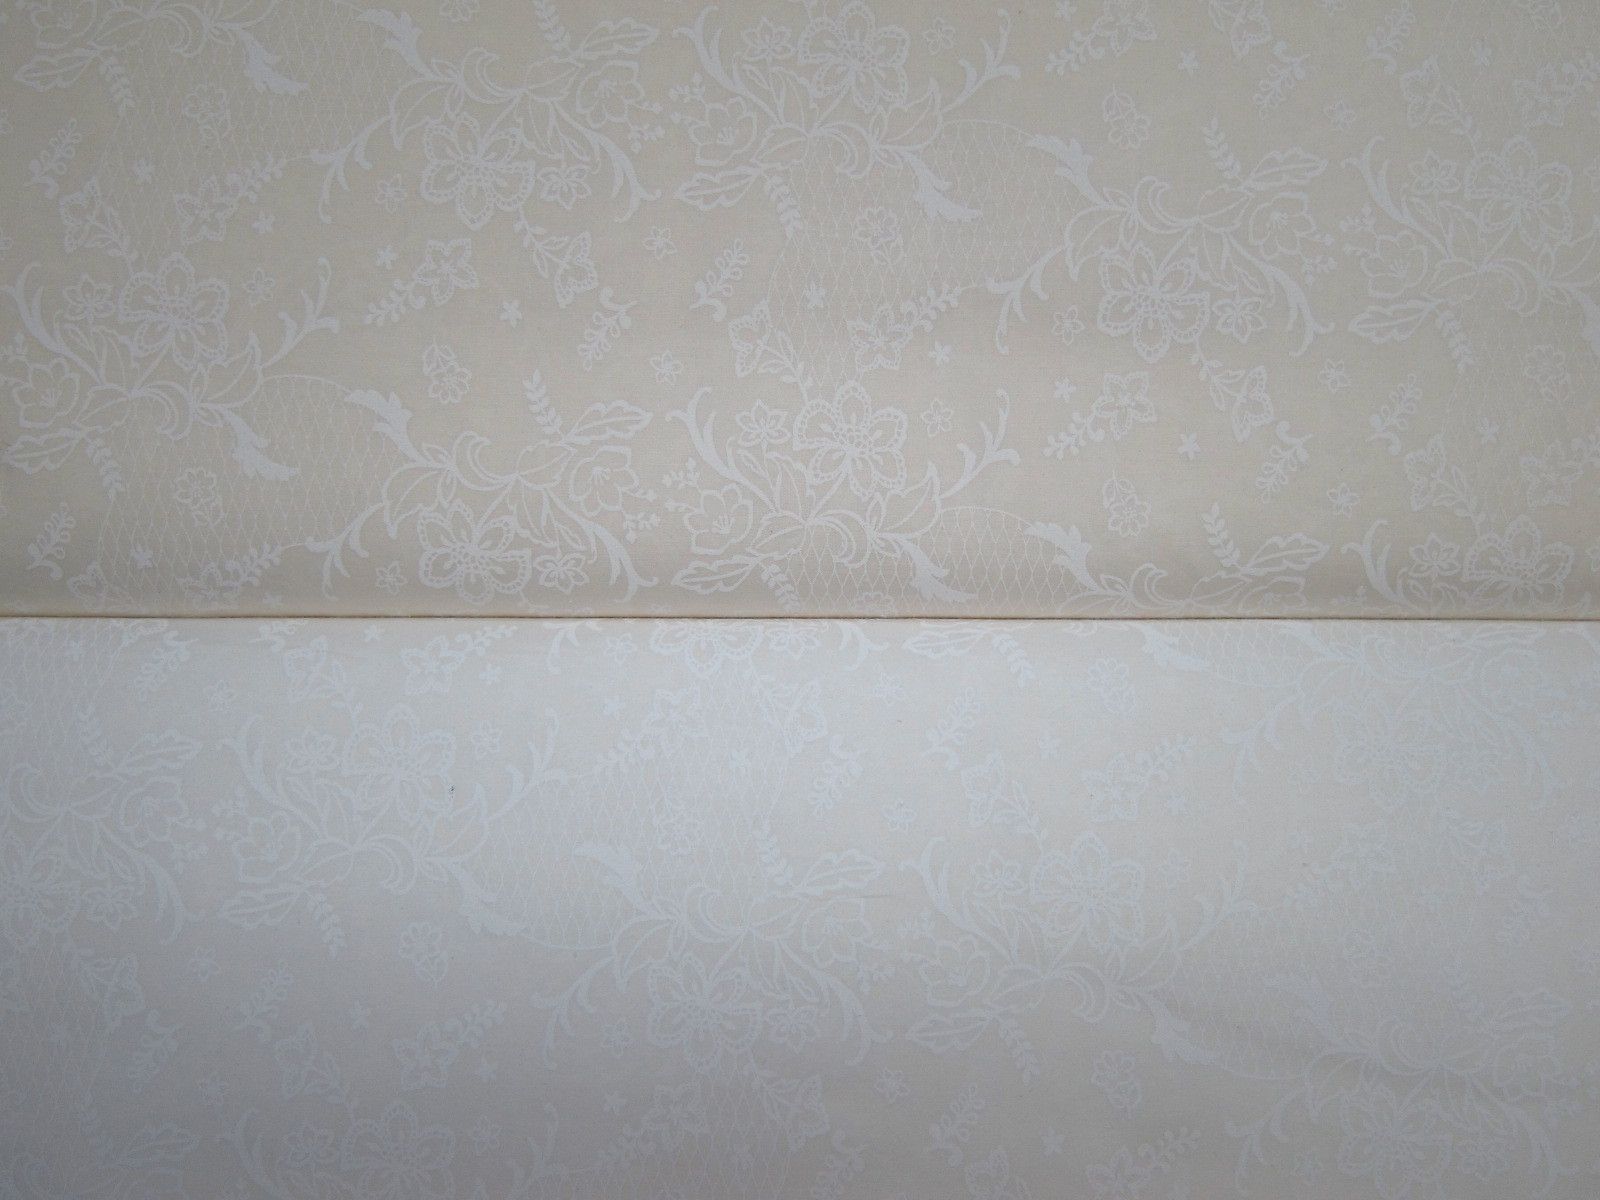 日本進口平織綿布-浮水印花群-米黃底、白底（100%純綿、日本製造）